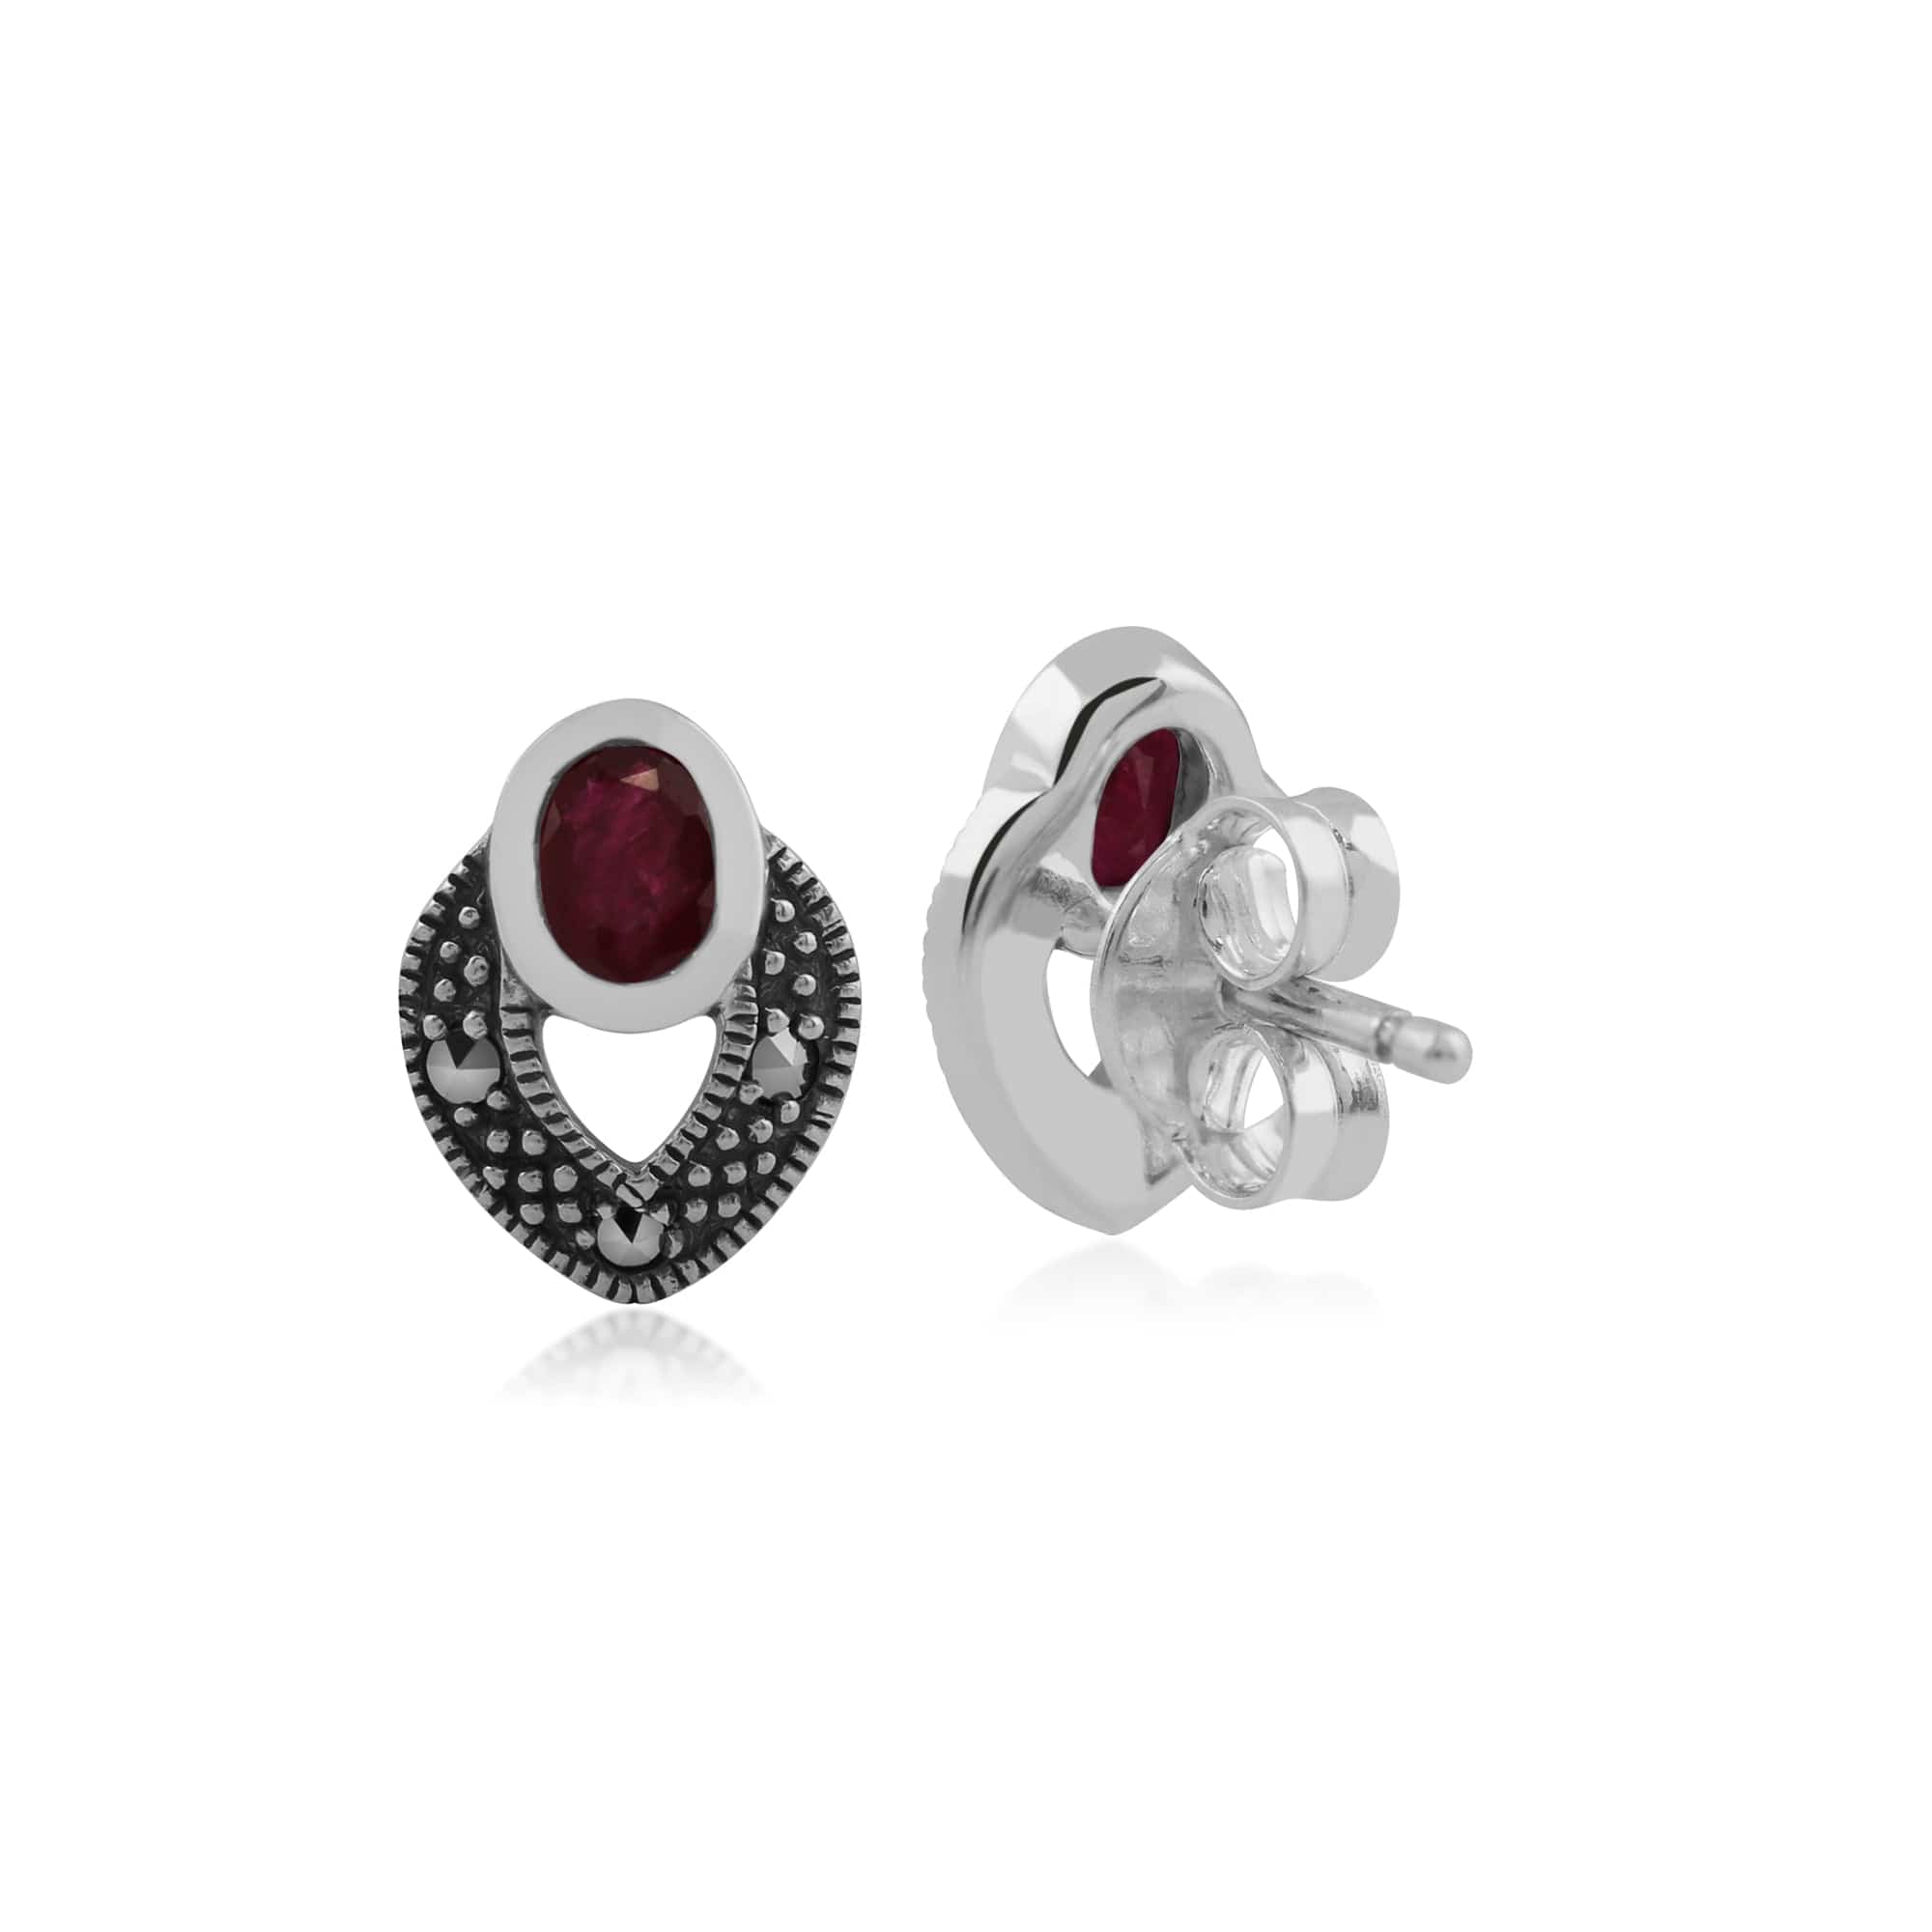 Art Deco Style Oval Ruby & Marcasite Stud Earrings in 925 Sterling Silver - Gemondo